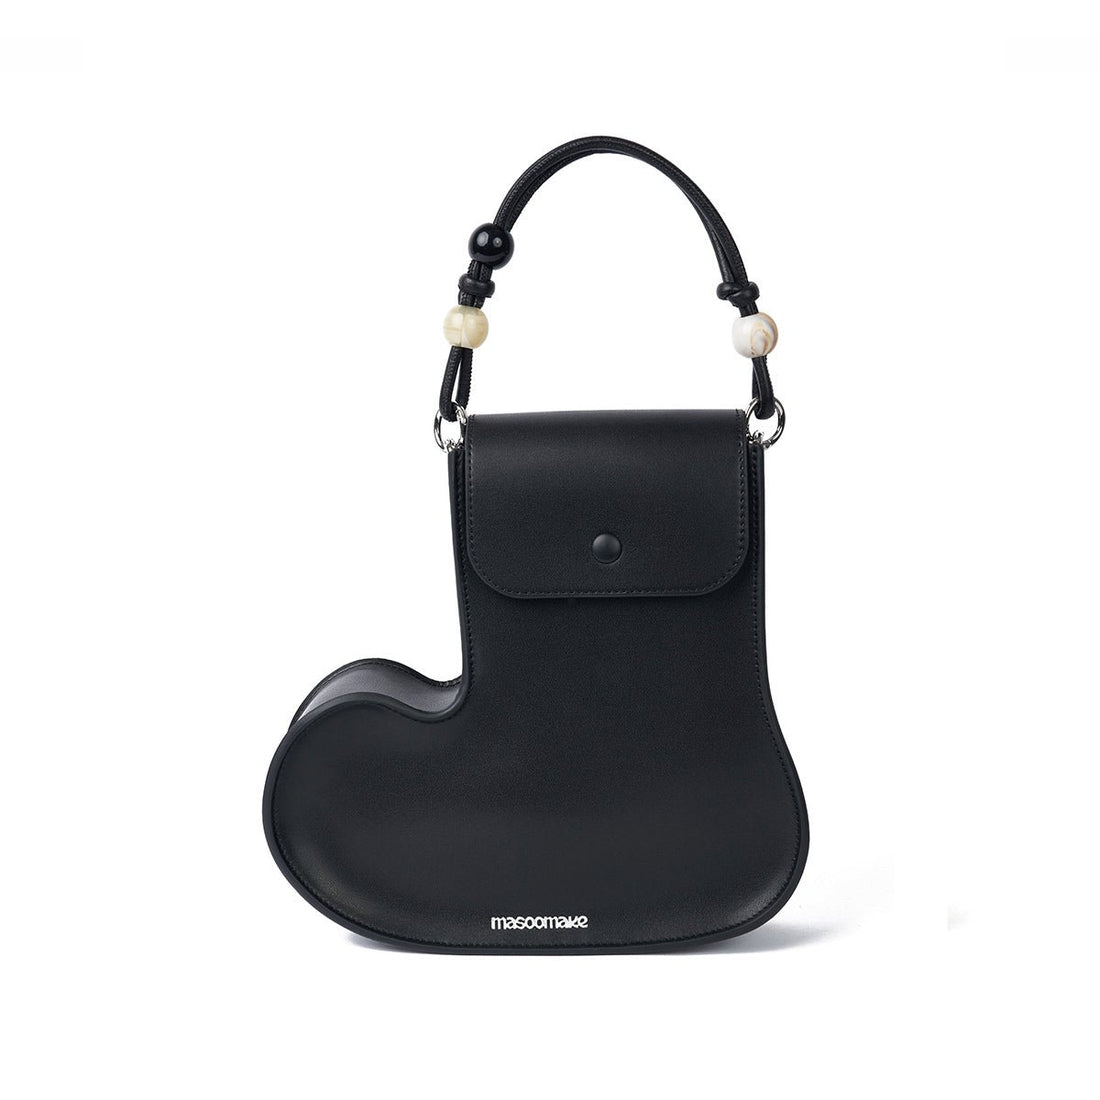 Fun Boots Convertible Black Shoulder Bag - 0cm